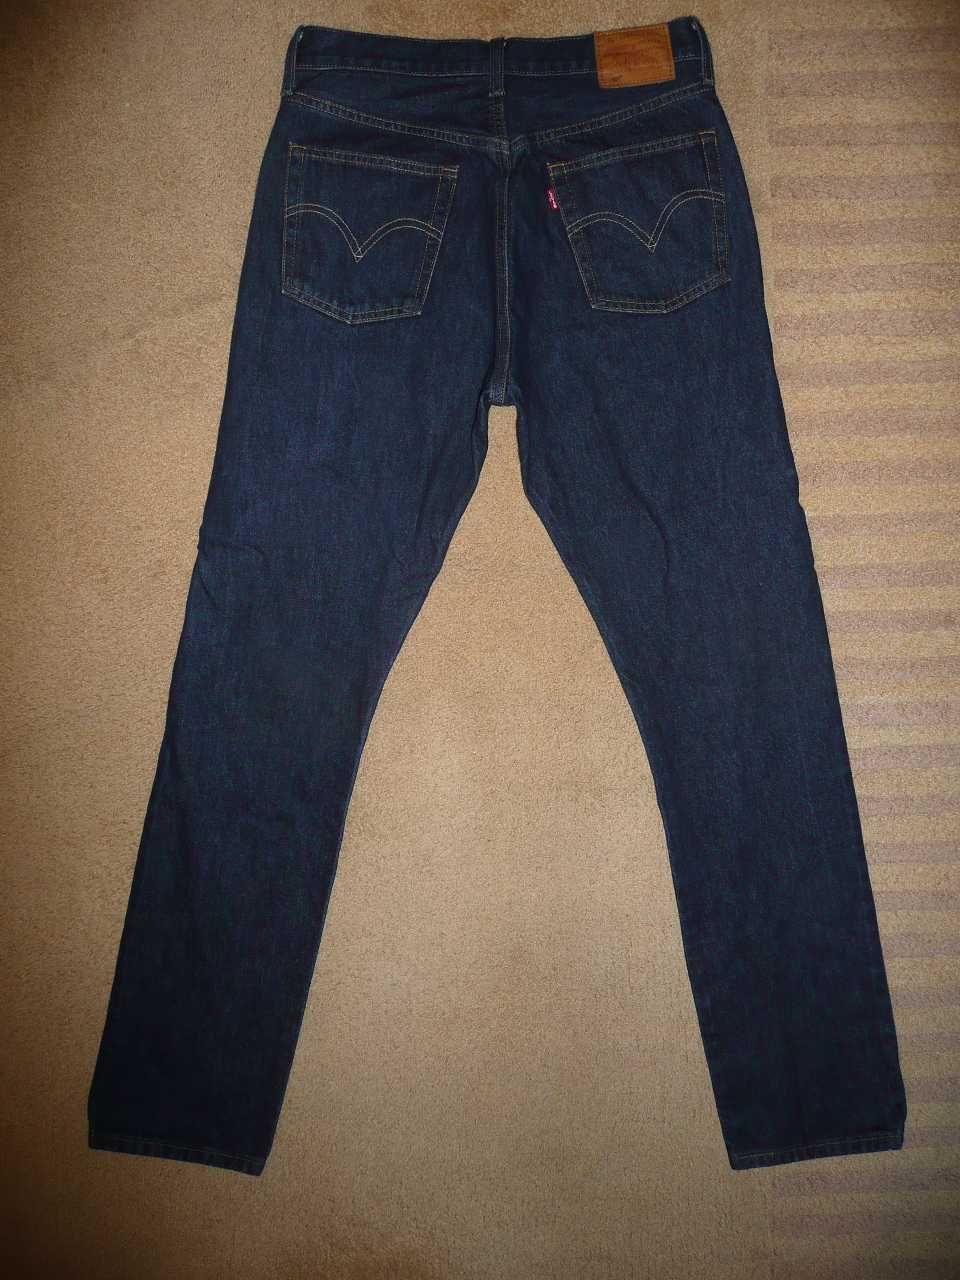 Spodnie dżinsy LEVIS 501 W29/L32=39,5/106cm jeansy PREMIUM